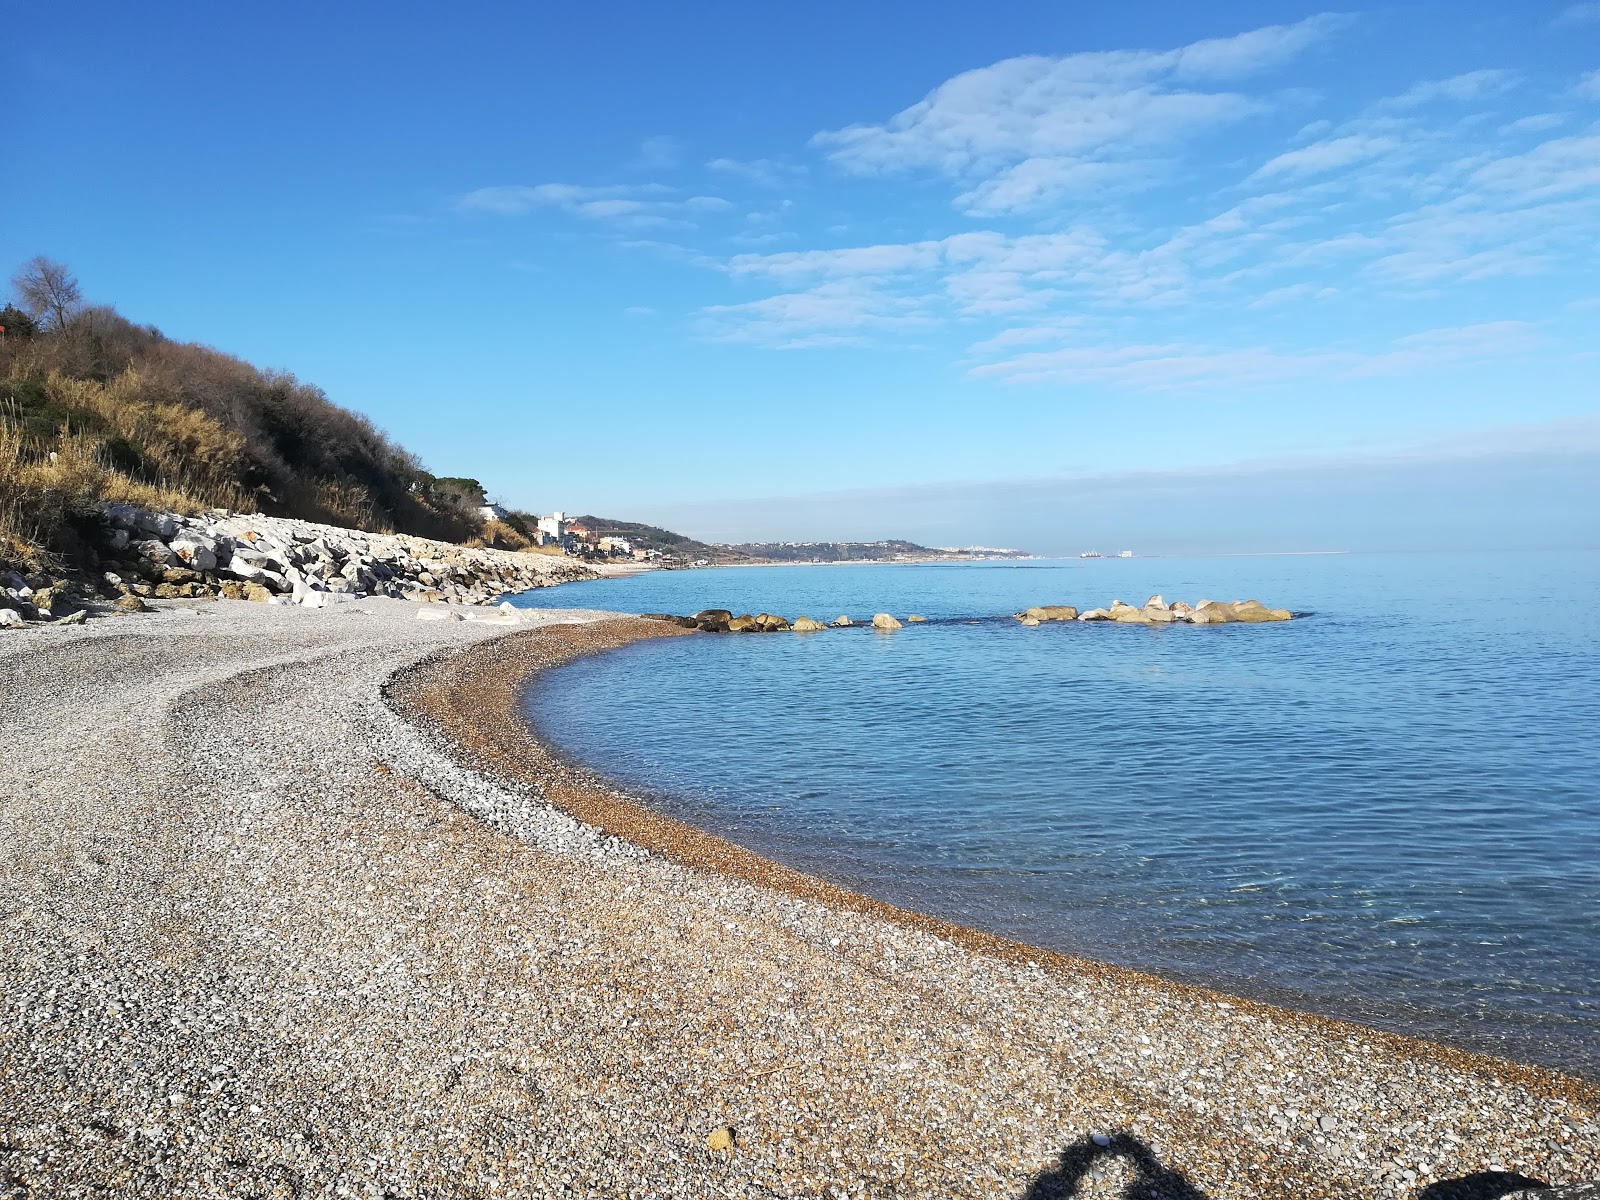 Spiaggia di Calata Turchino'in fotoğrafı küçük koylar ile birlikte